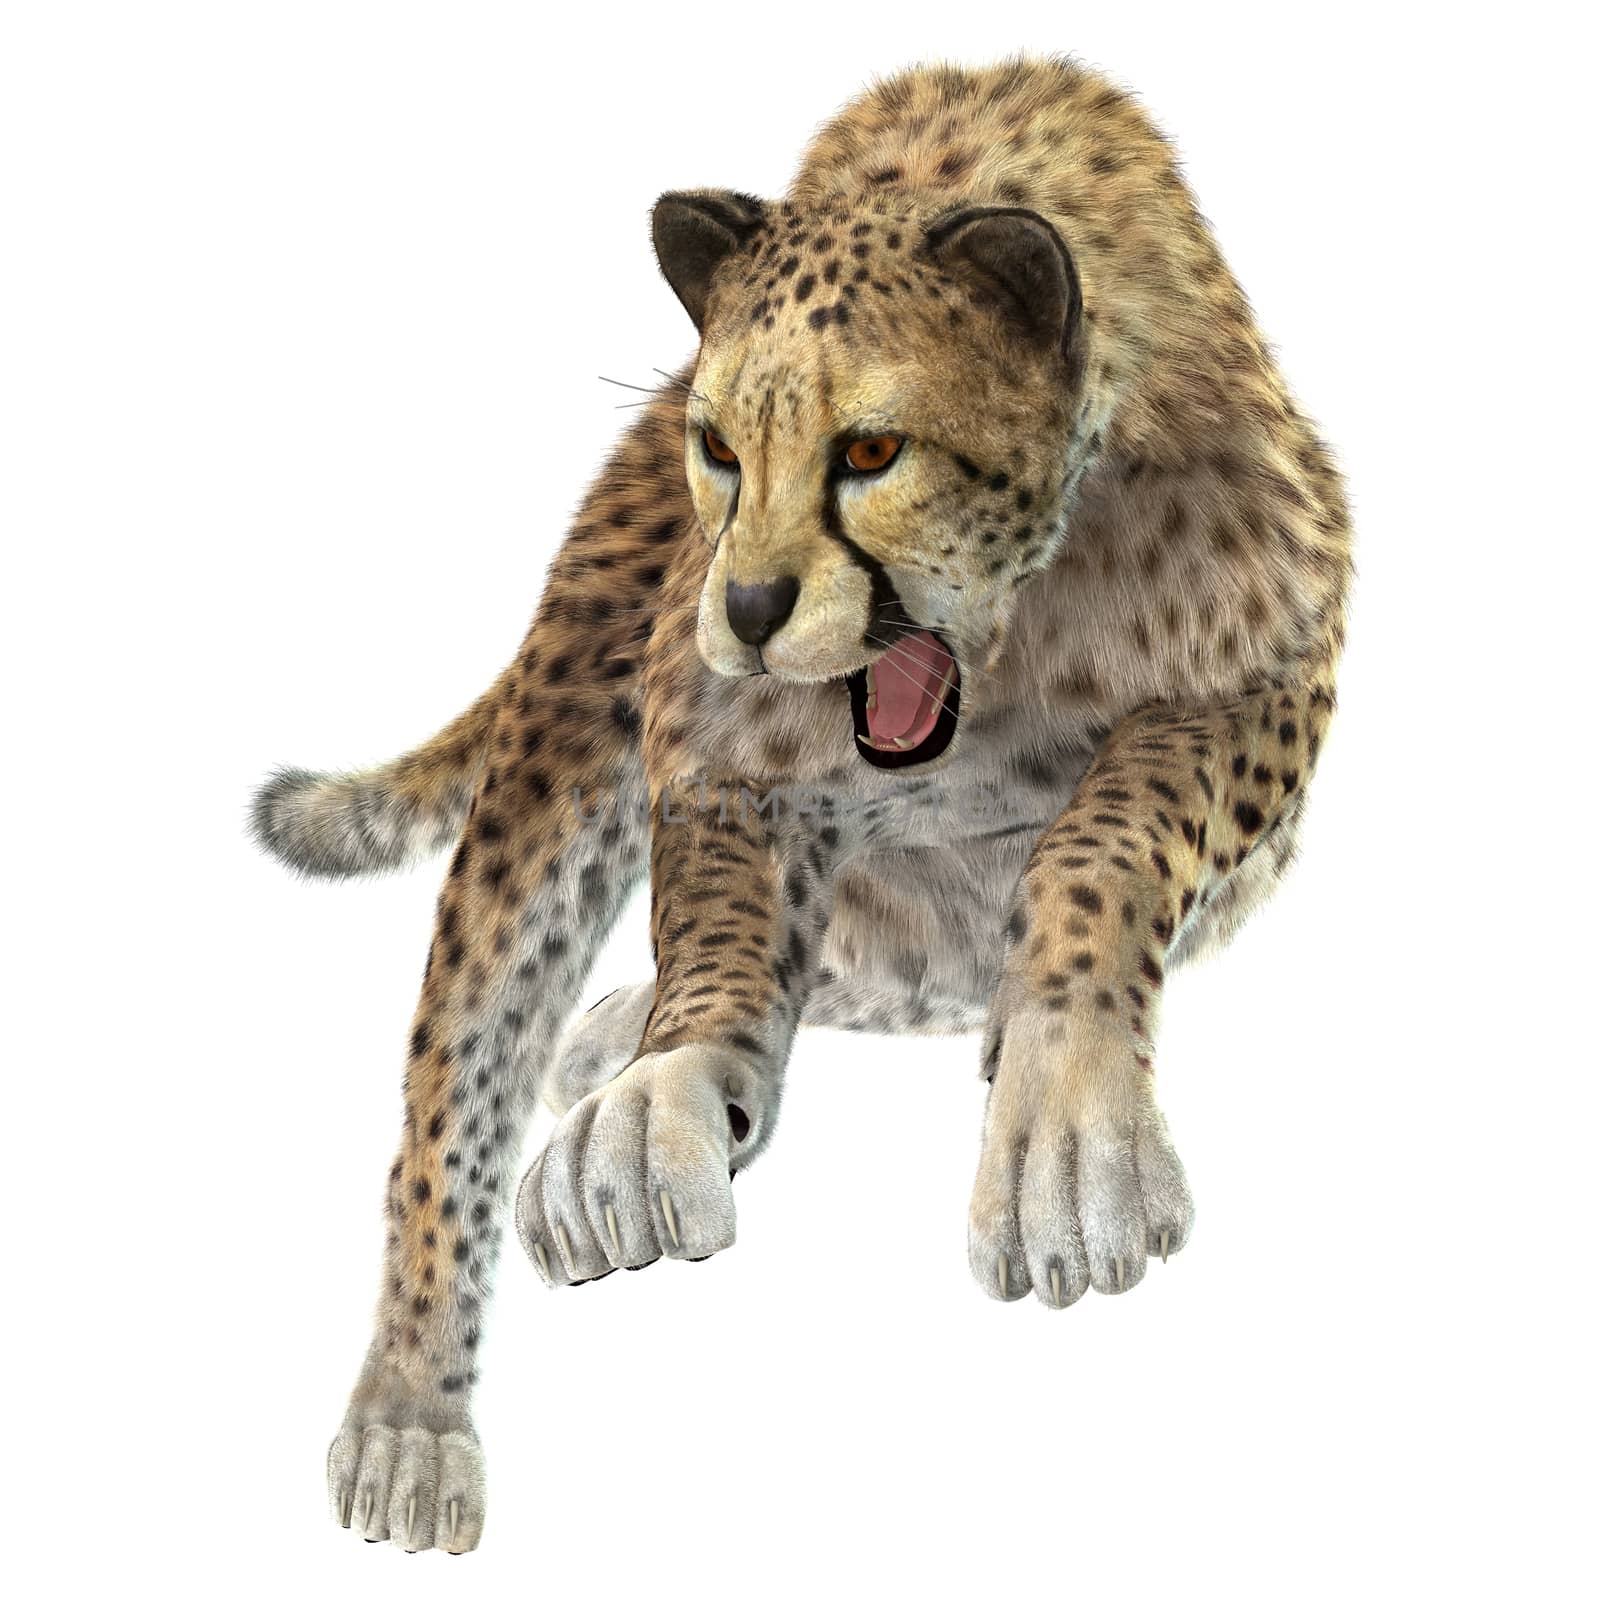 Hunting Cheetah by Vac